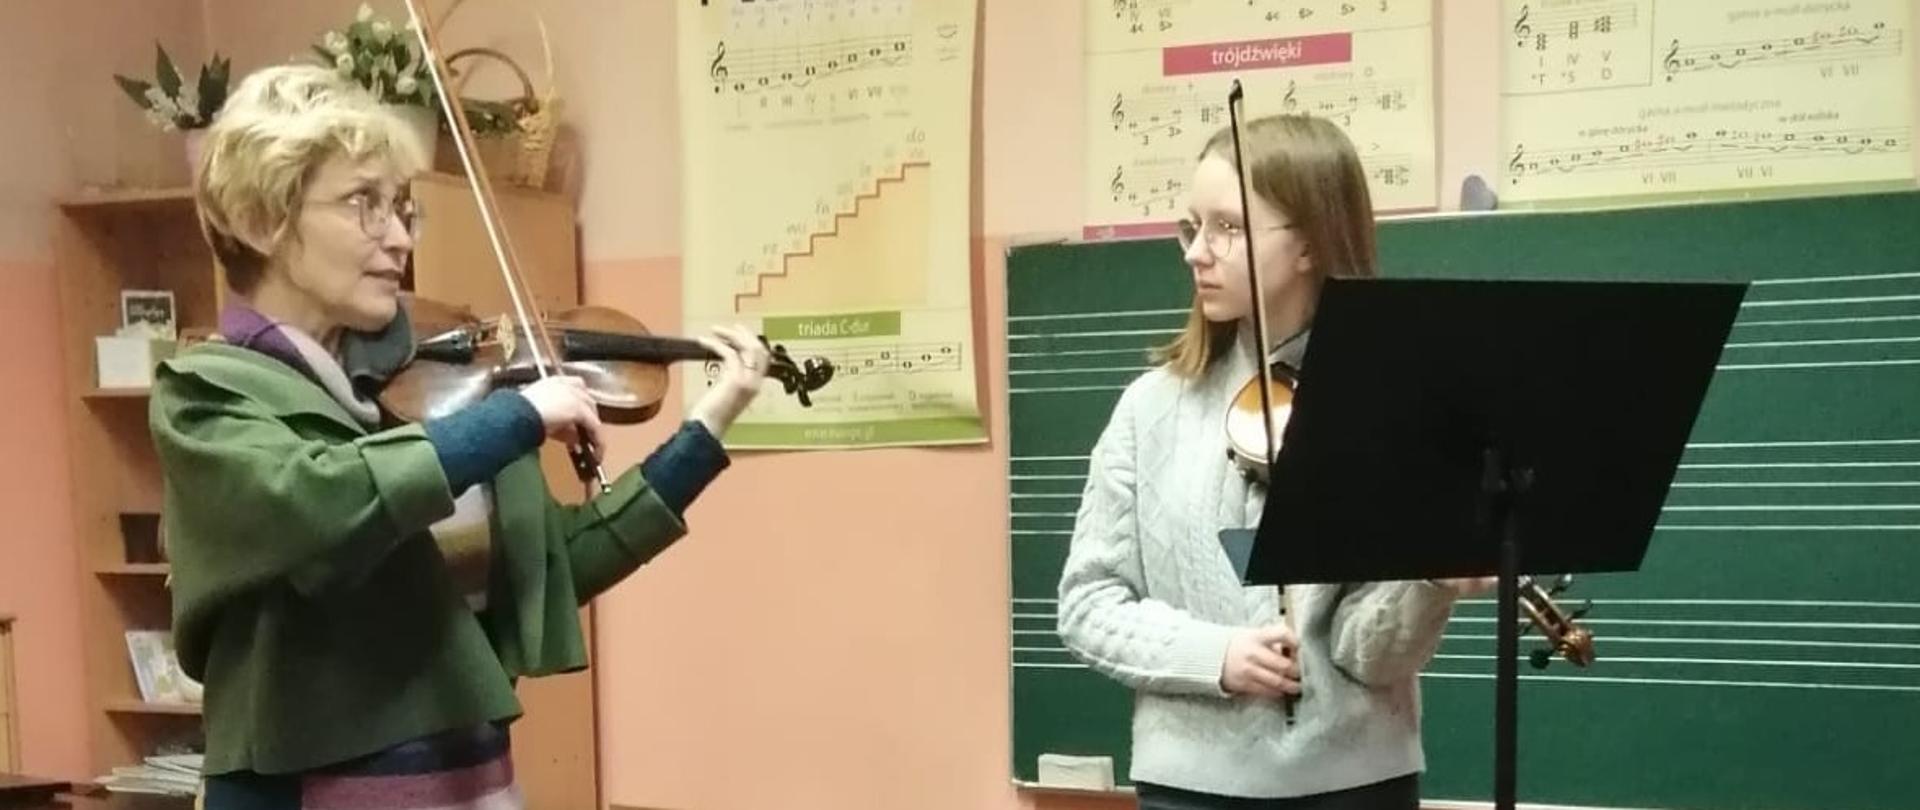 Prowadząca pokazująca na skrzypcach technikę. obok uczennica obserwująca prezentację